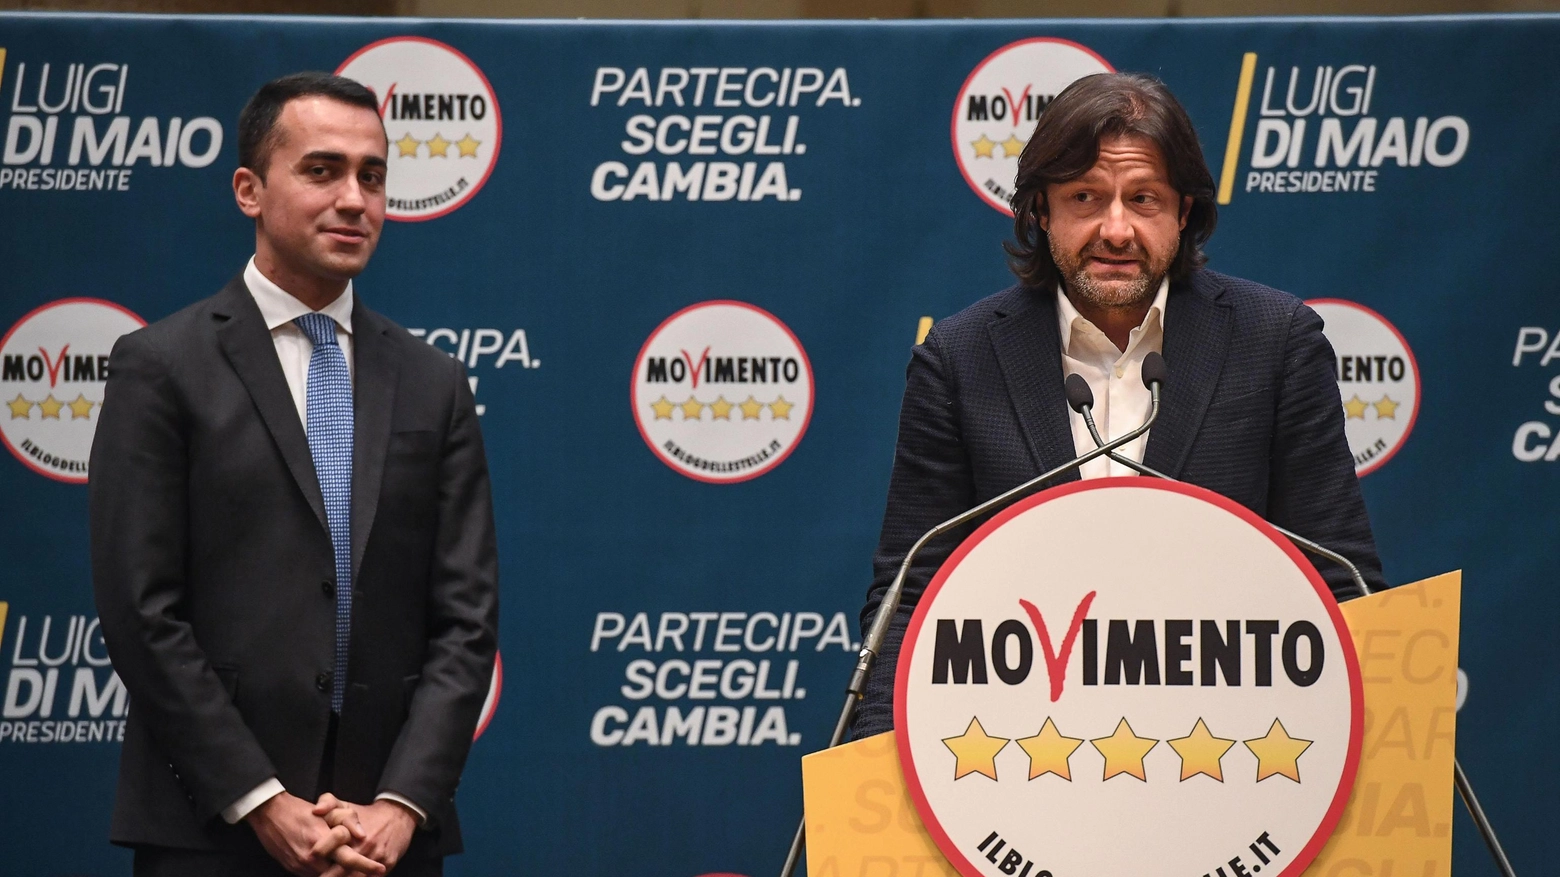 Luigi Di Maio e Salvatore Caiata durante la presentazione dei candidati M5s (Ansa)